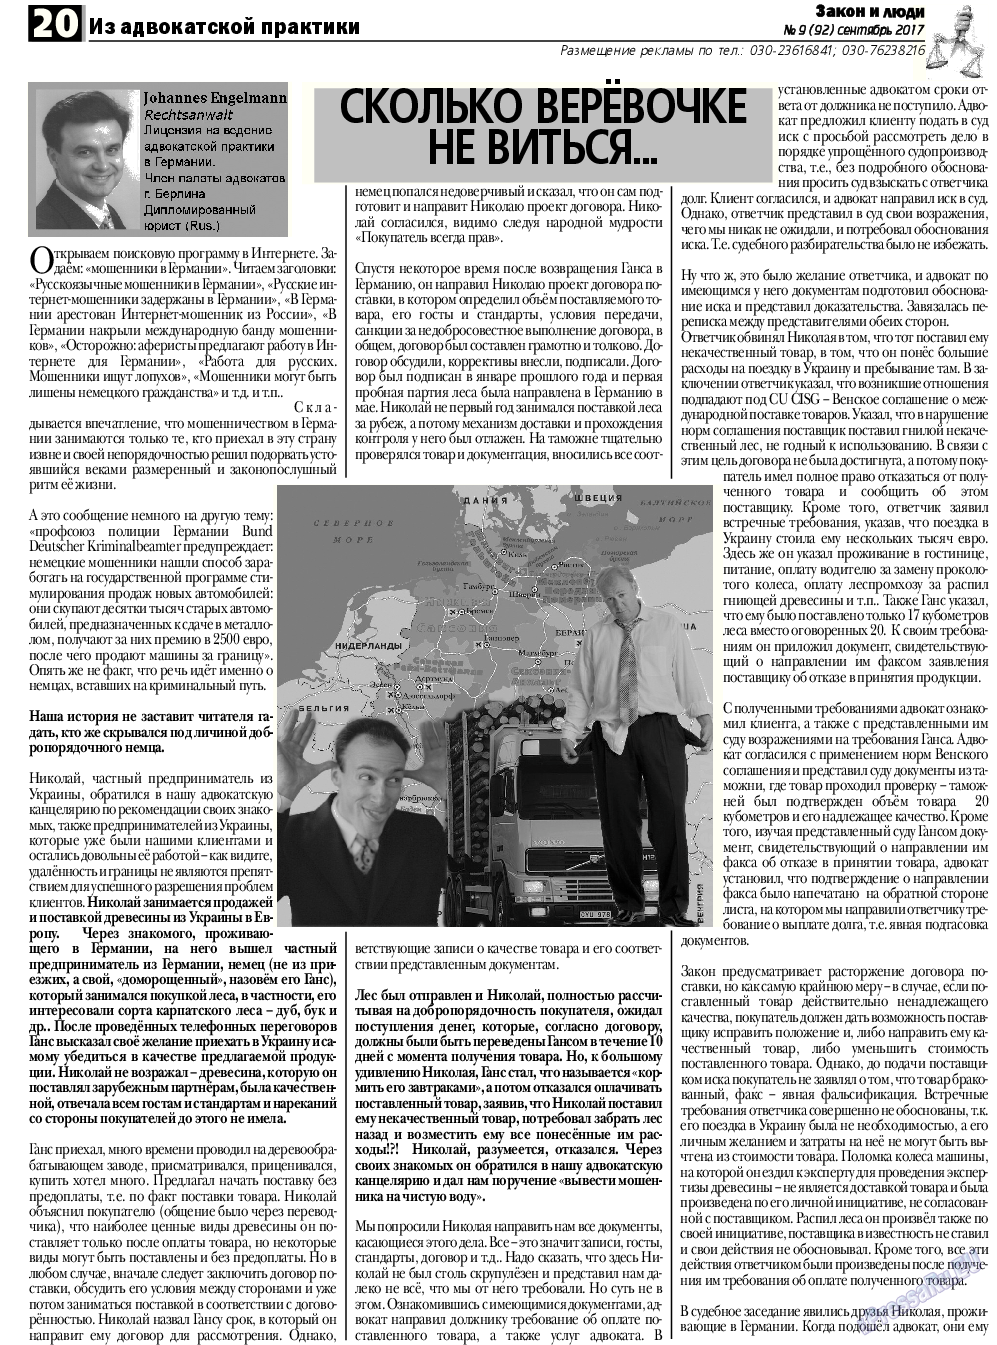 Закон и люди, газета. 2017 №9 стр.20